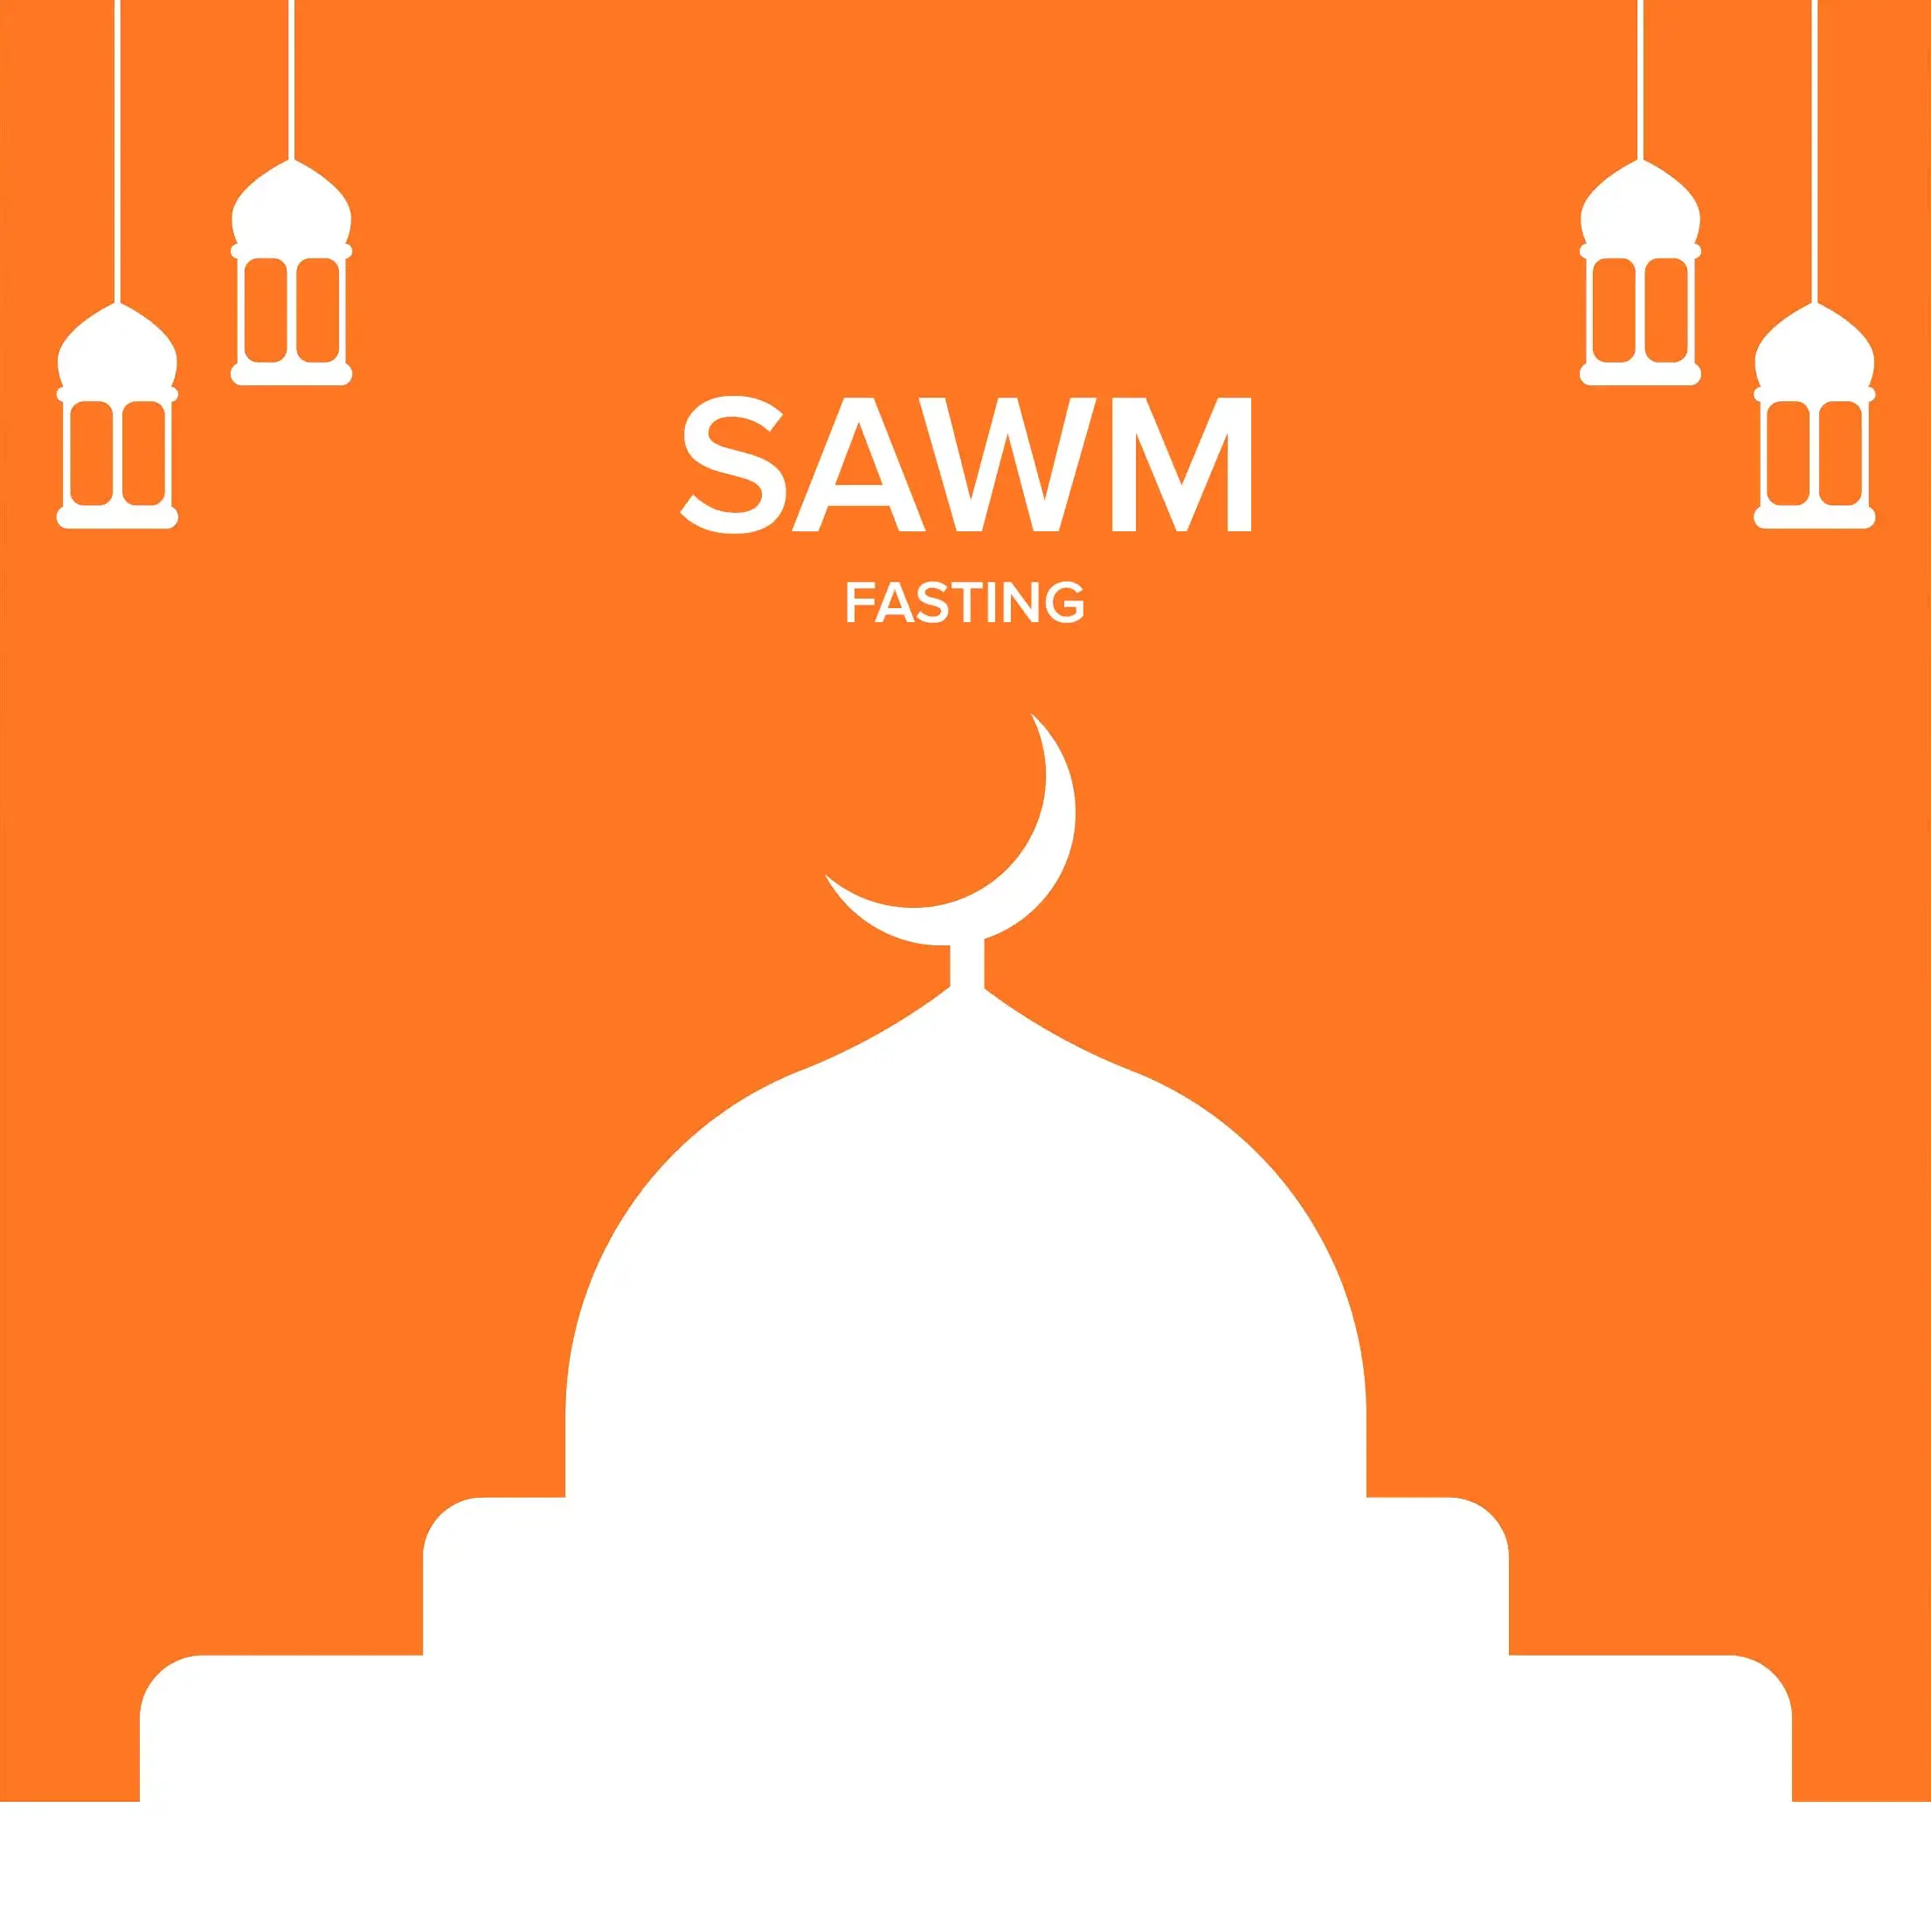 sawm - fasting